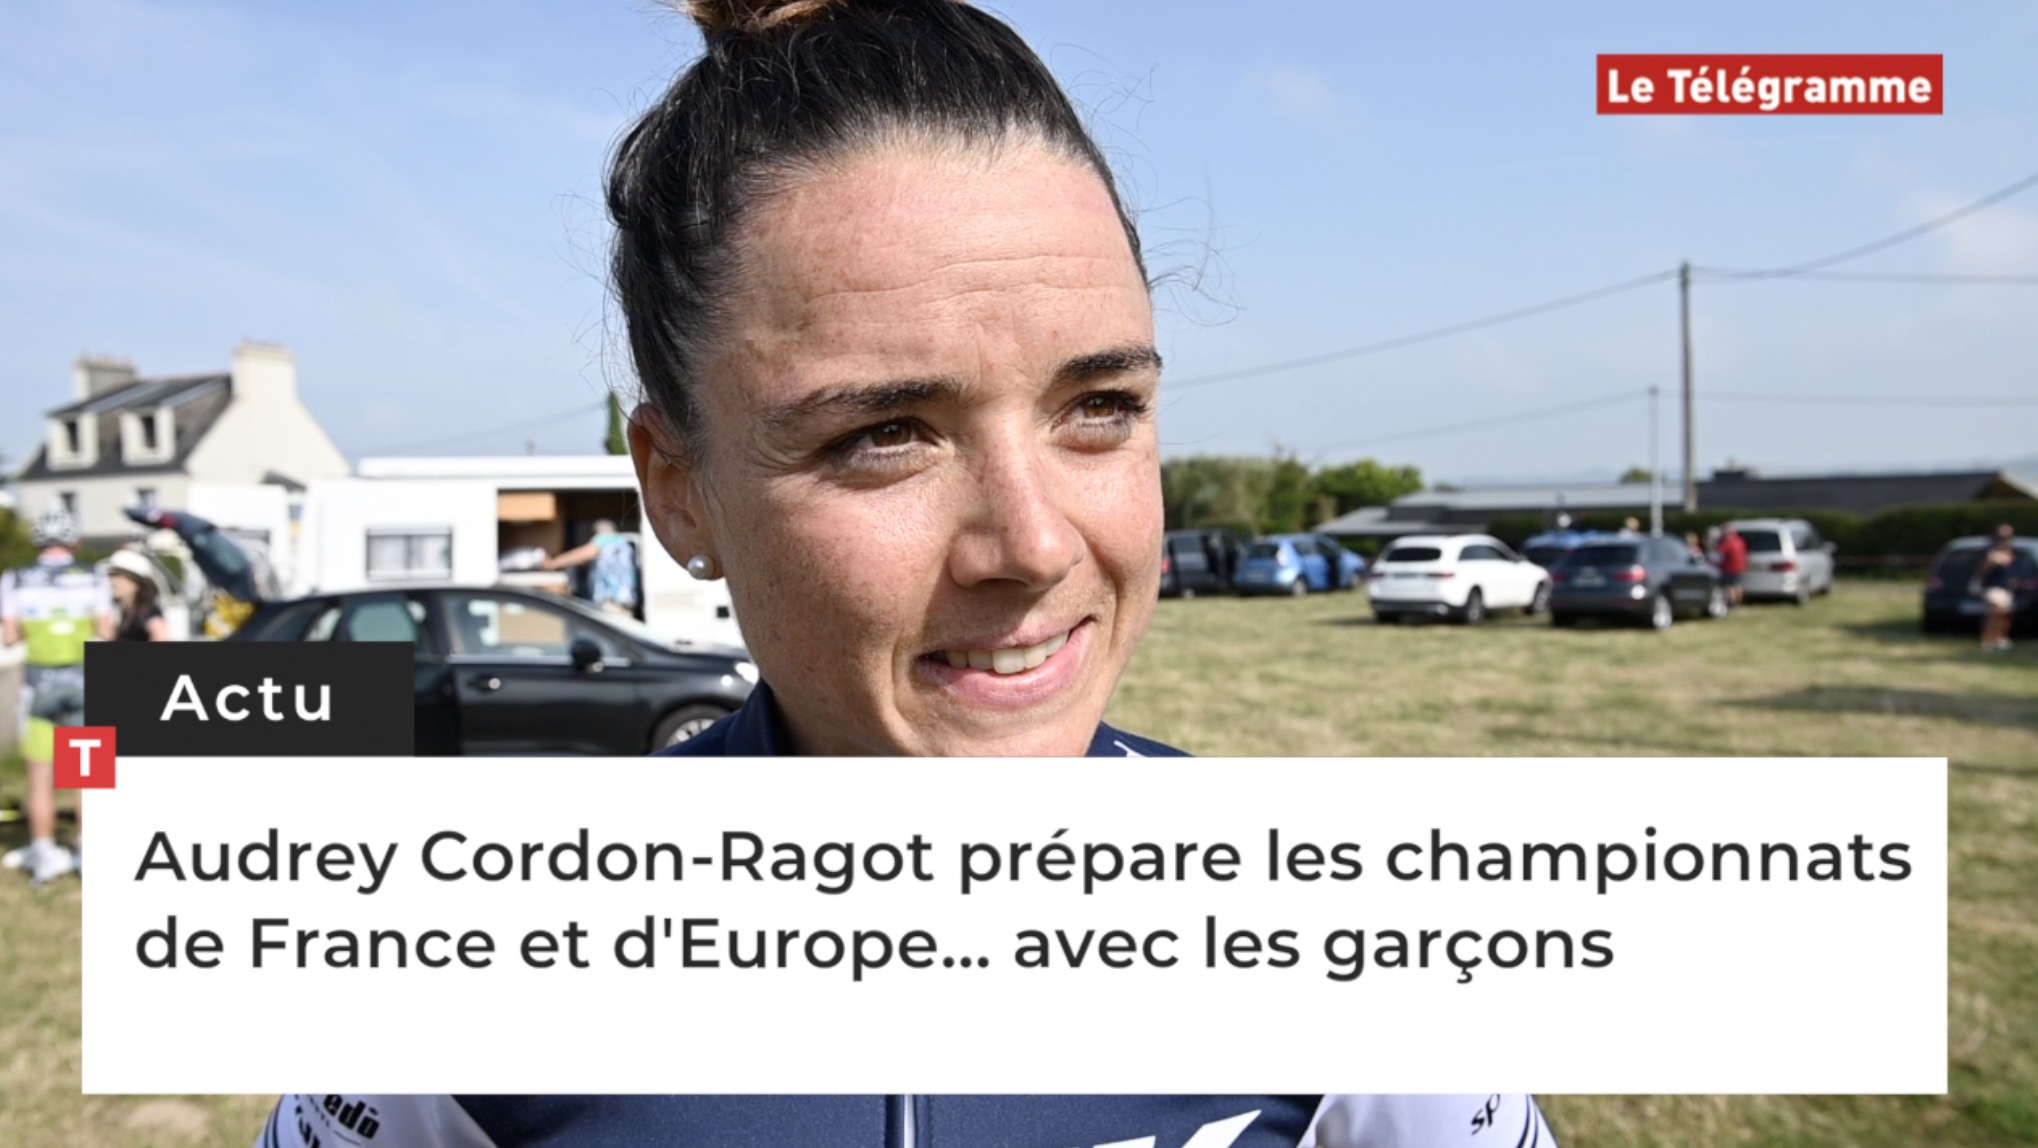 Audrey Cordon-Ragot prépare les championnats de France et d'Europe... avec les garçons  (Le Télégramme)